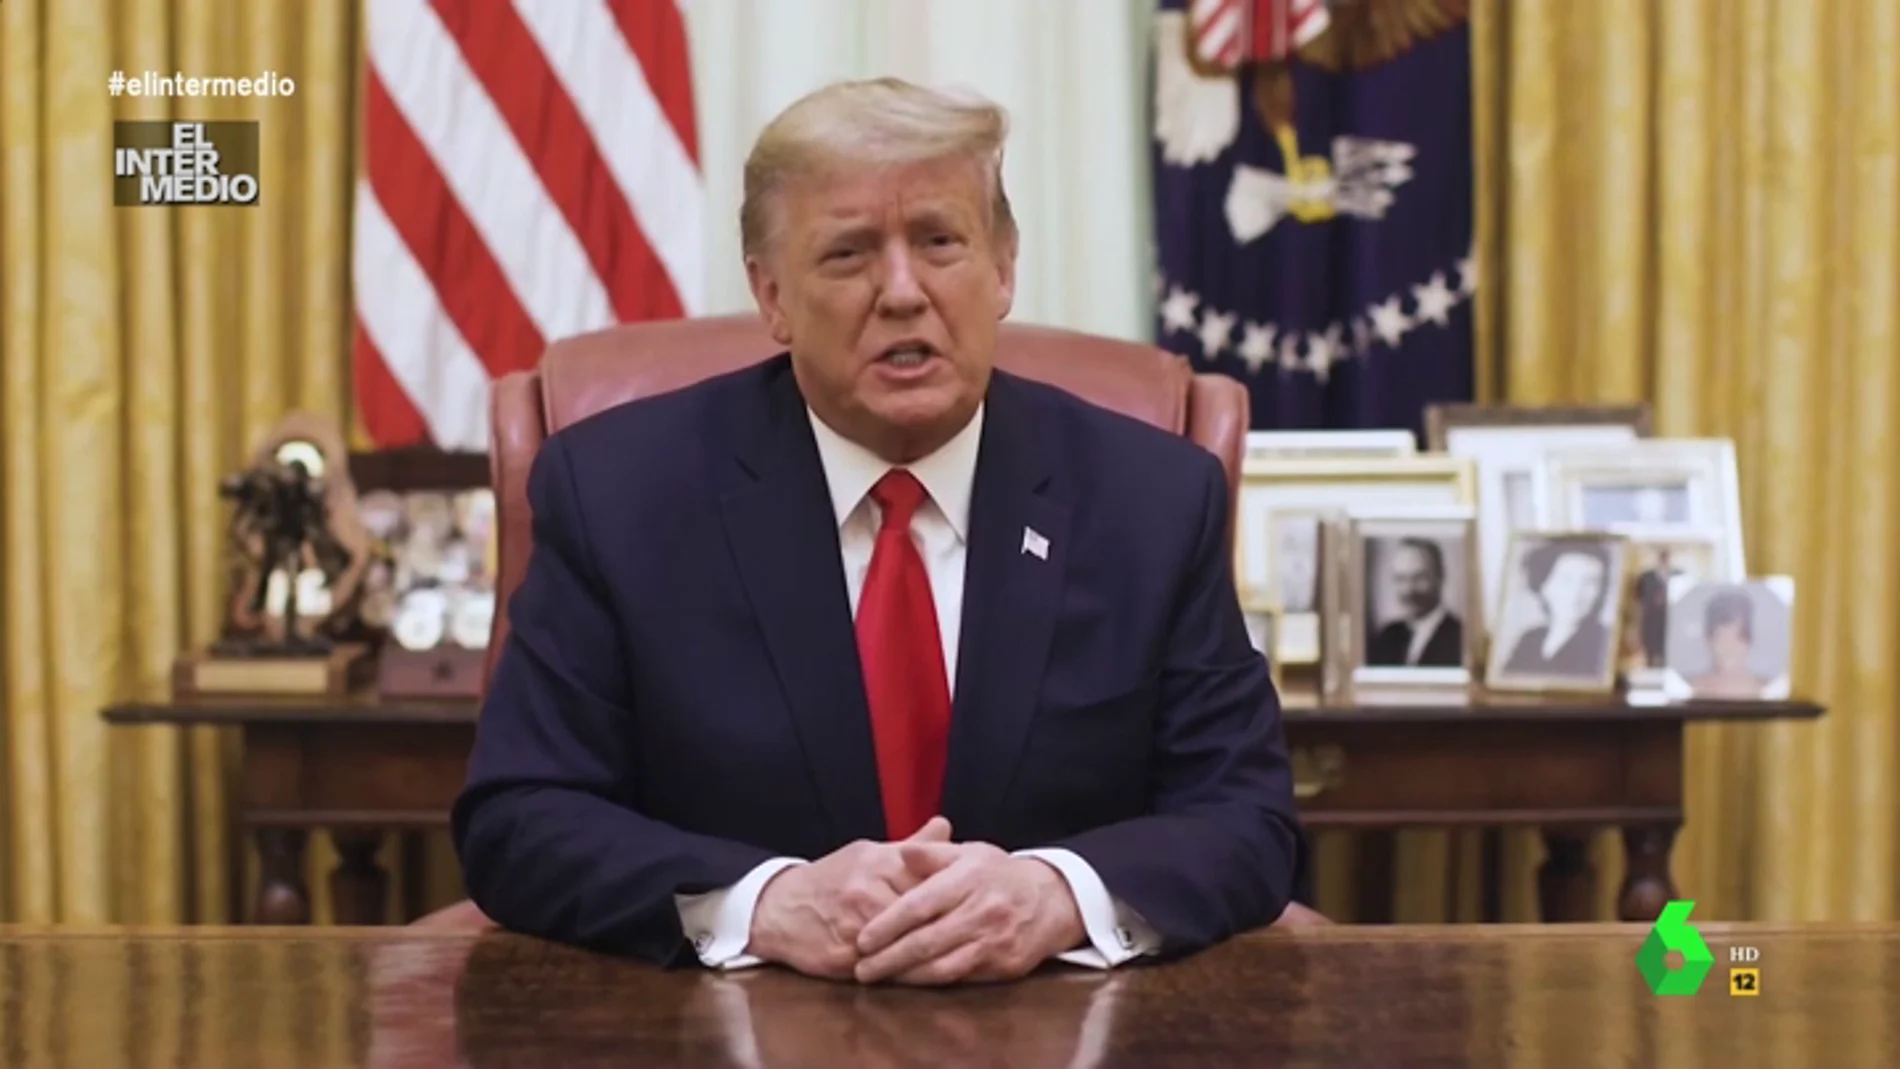 Vídeo manipulado - El consejo de Trump ante las caras "serias y grises" de sus espectadores: "Sonrían un rato, por favor"